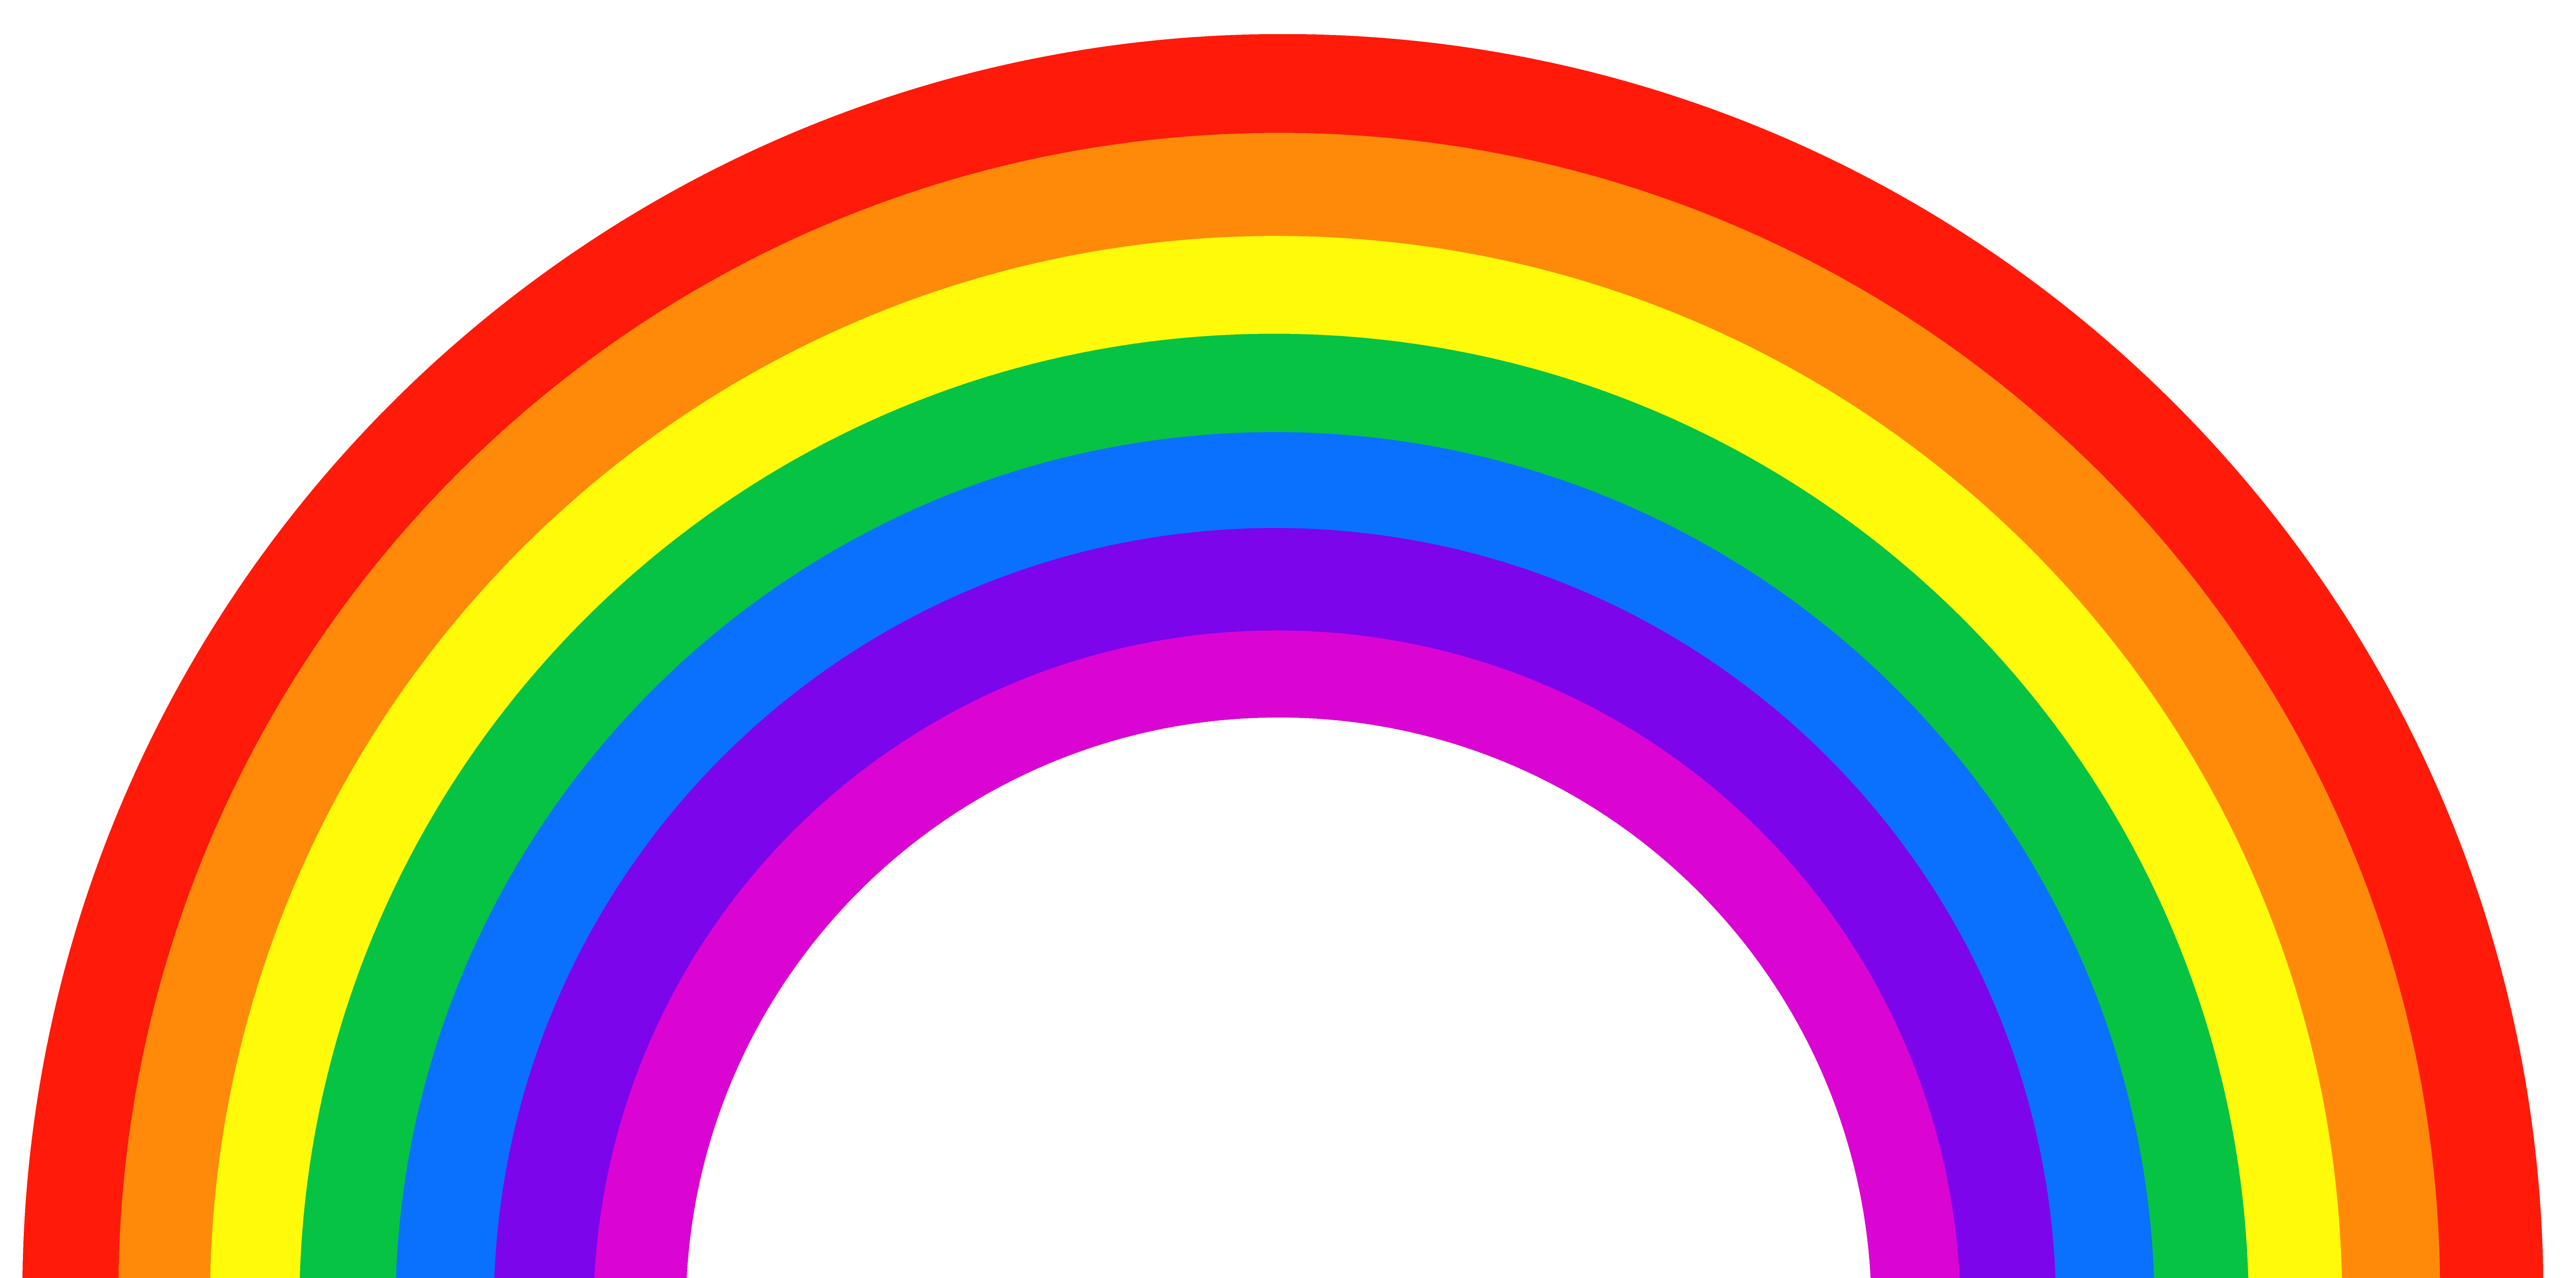 rainbow-background-clipart-rainbow-5961x3059-8268